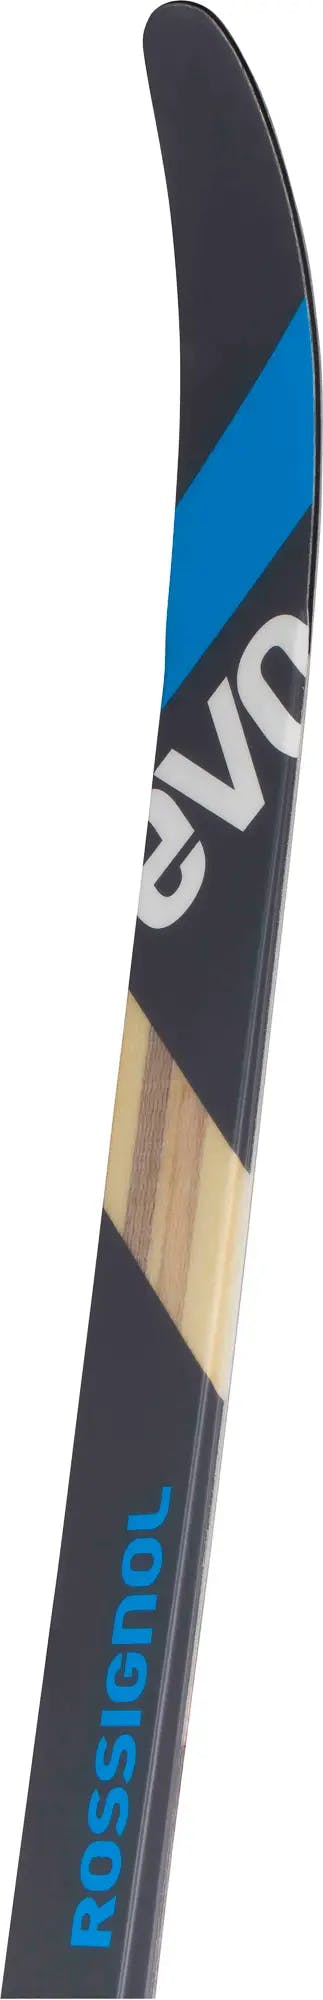 Rossignol Evo OT 60 Positrack IFP Skis + Control Step In Bindings · 2023